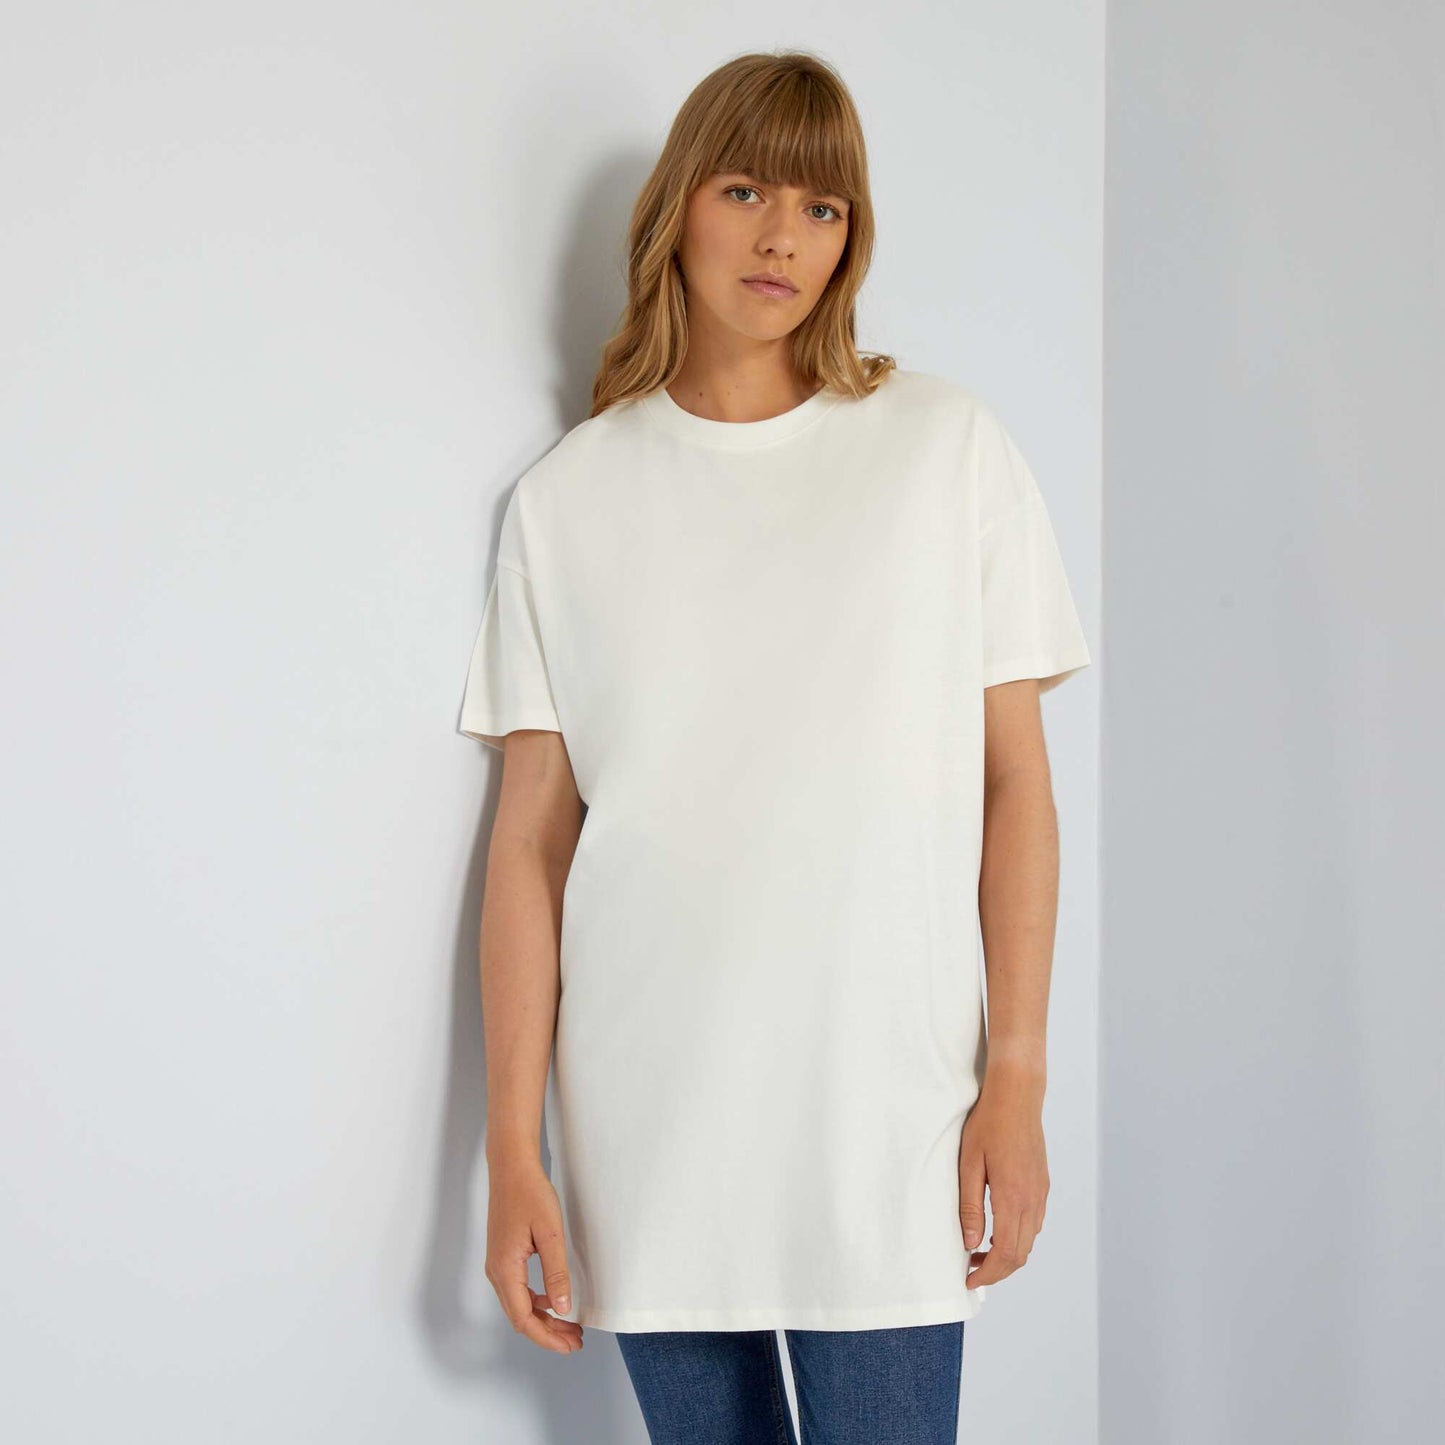 T-shirt uni manches courtes Blanc